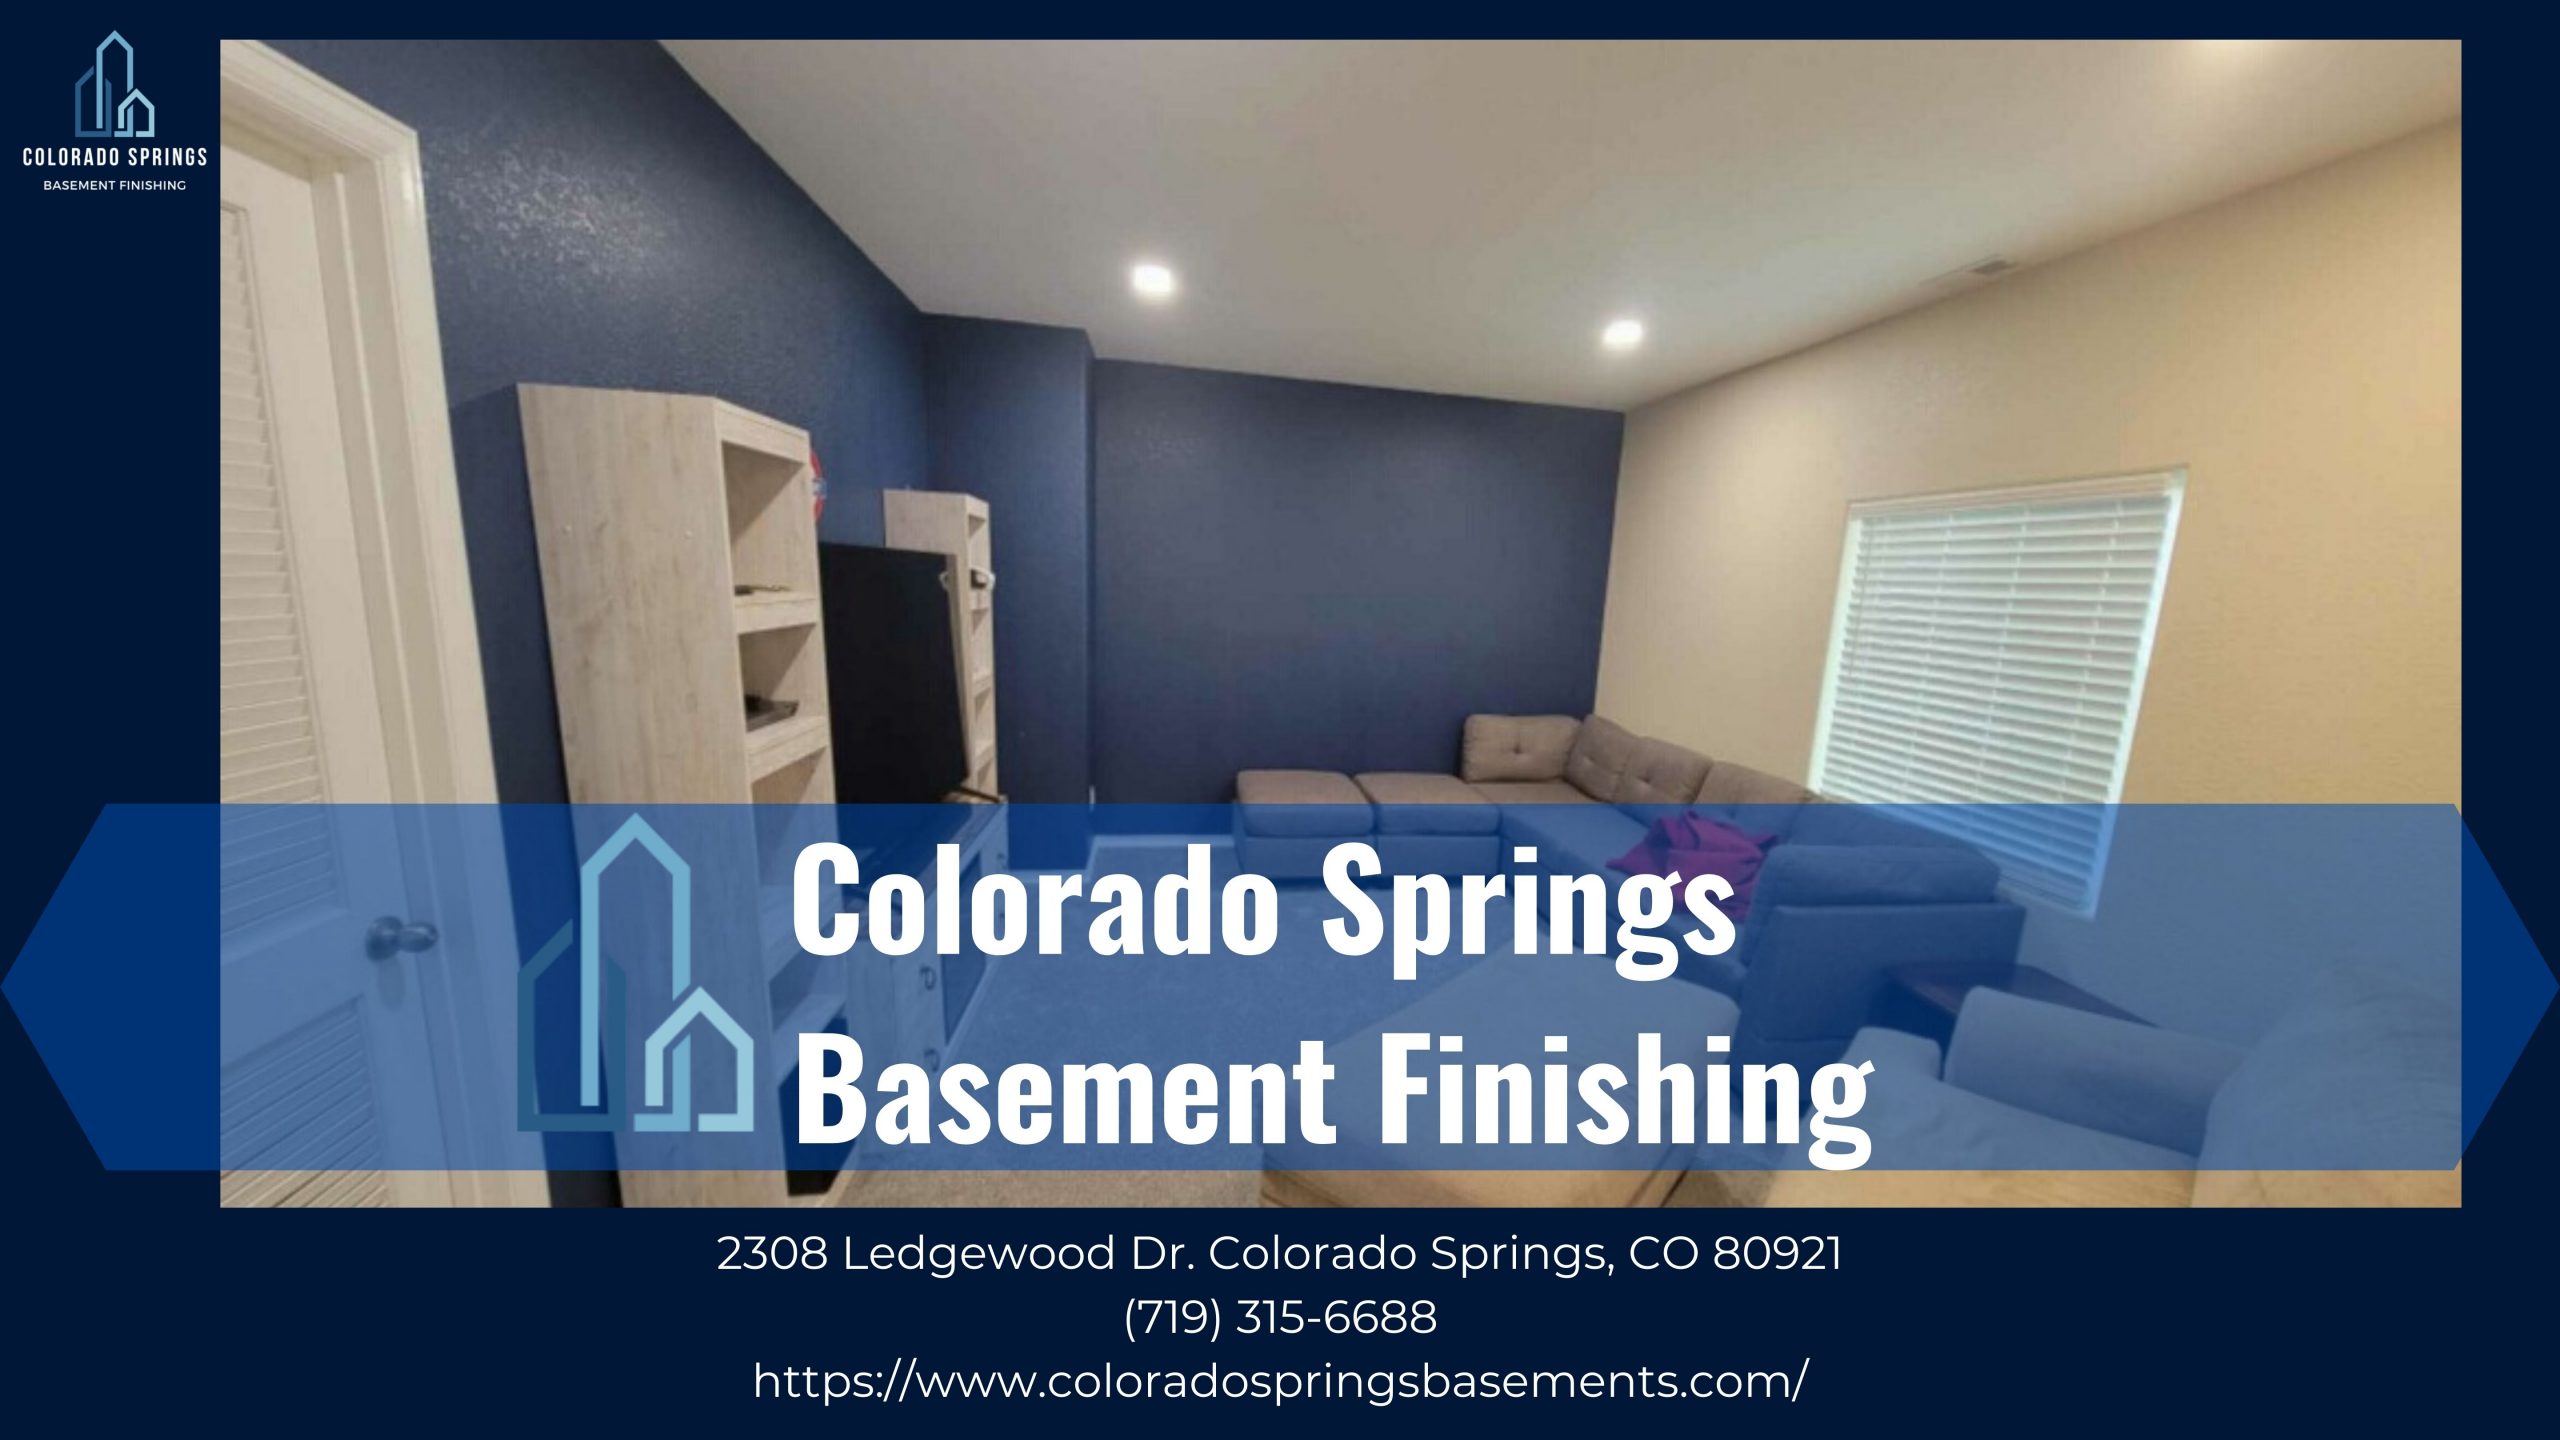 Basement Finishing In Colorado Springs, Colorado